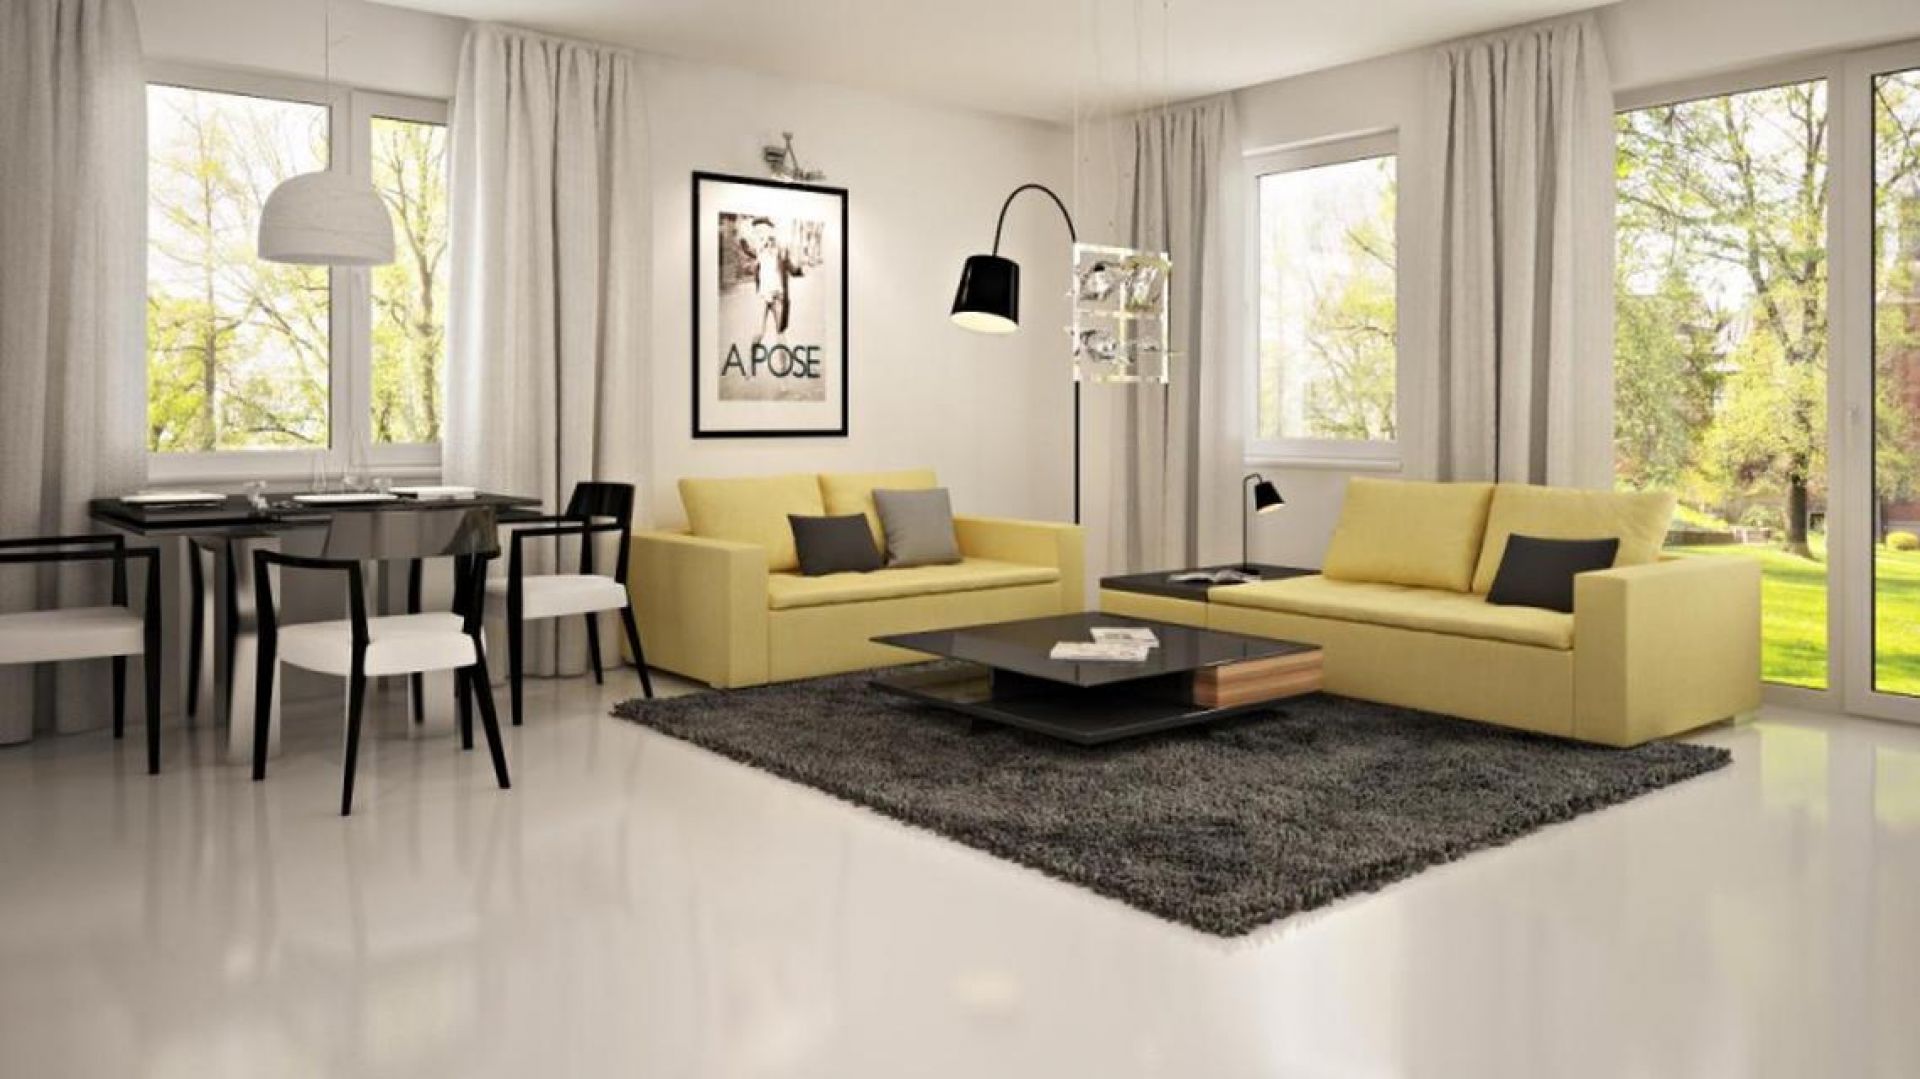 W tym nowoczesnym salonie dominuje biel ożywiona czernią i żółto-zielonymi barwami. Fot. Z500